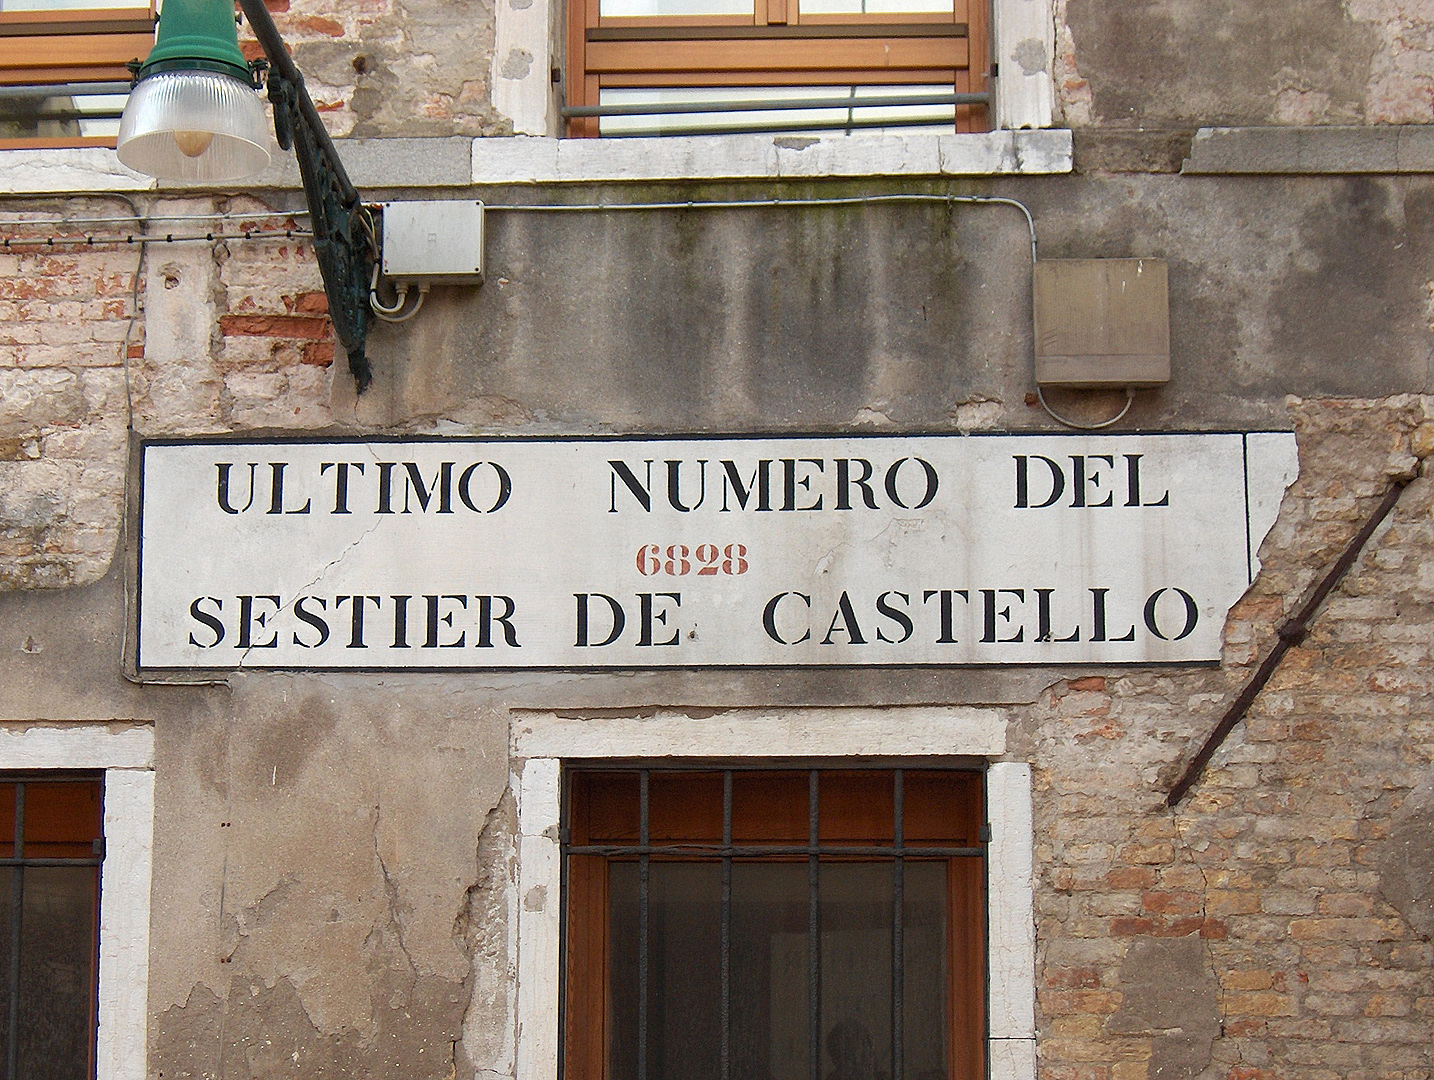 Sestier de Castello (Veneti, Itali), Sestier de Castello (Venice, Italy)